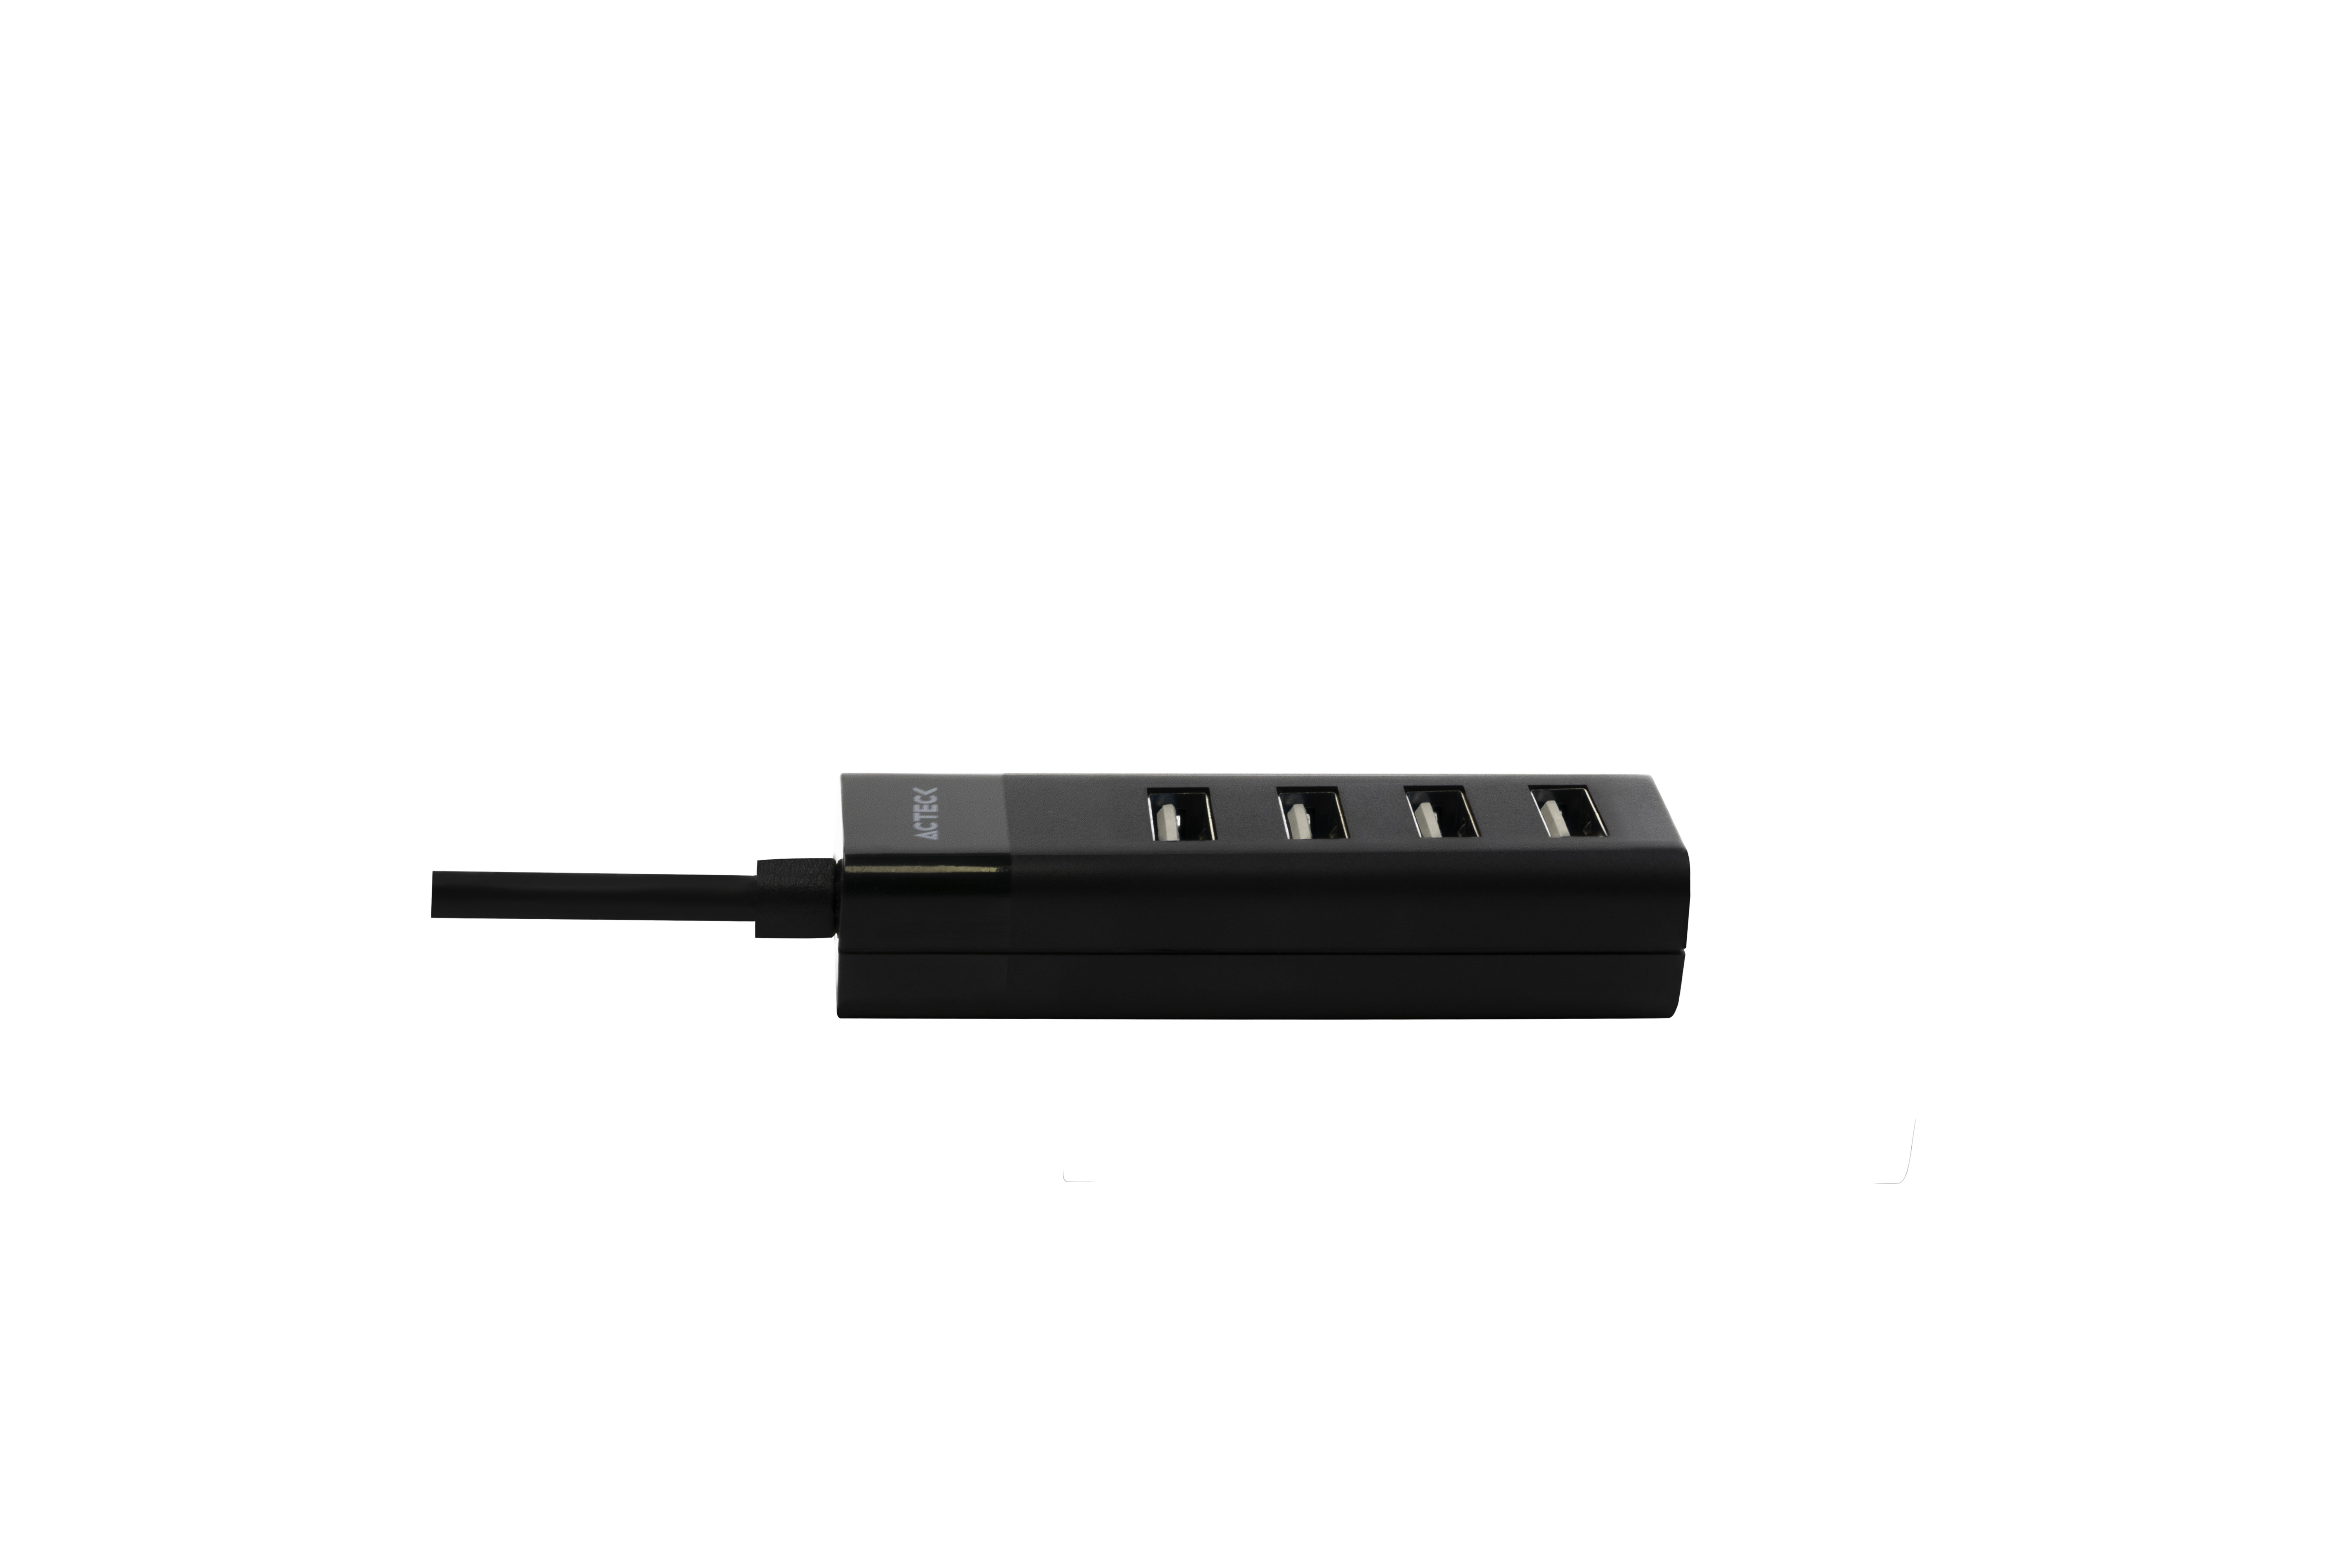 HUB ACTECK USB-A 4EN1 PORTX2 DH420 4XUSB-A 2.0 AC-934671